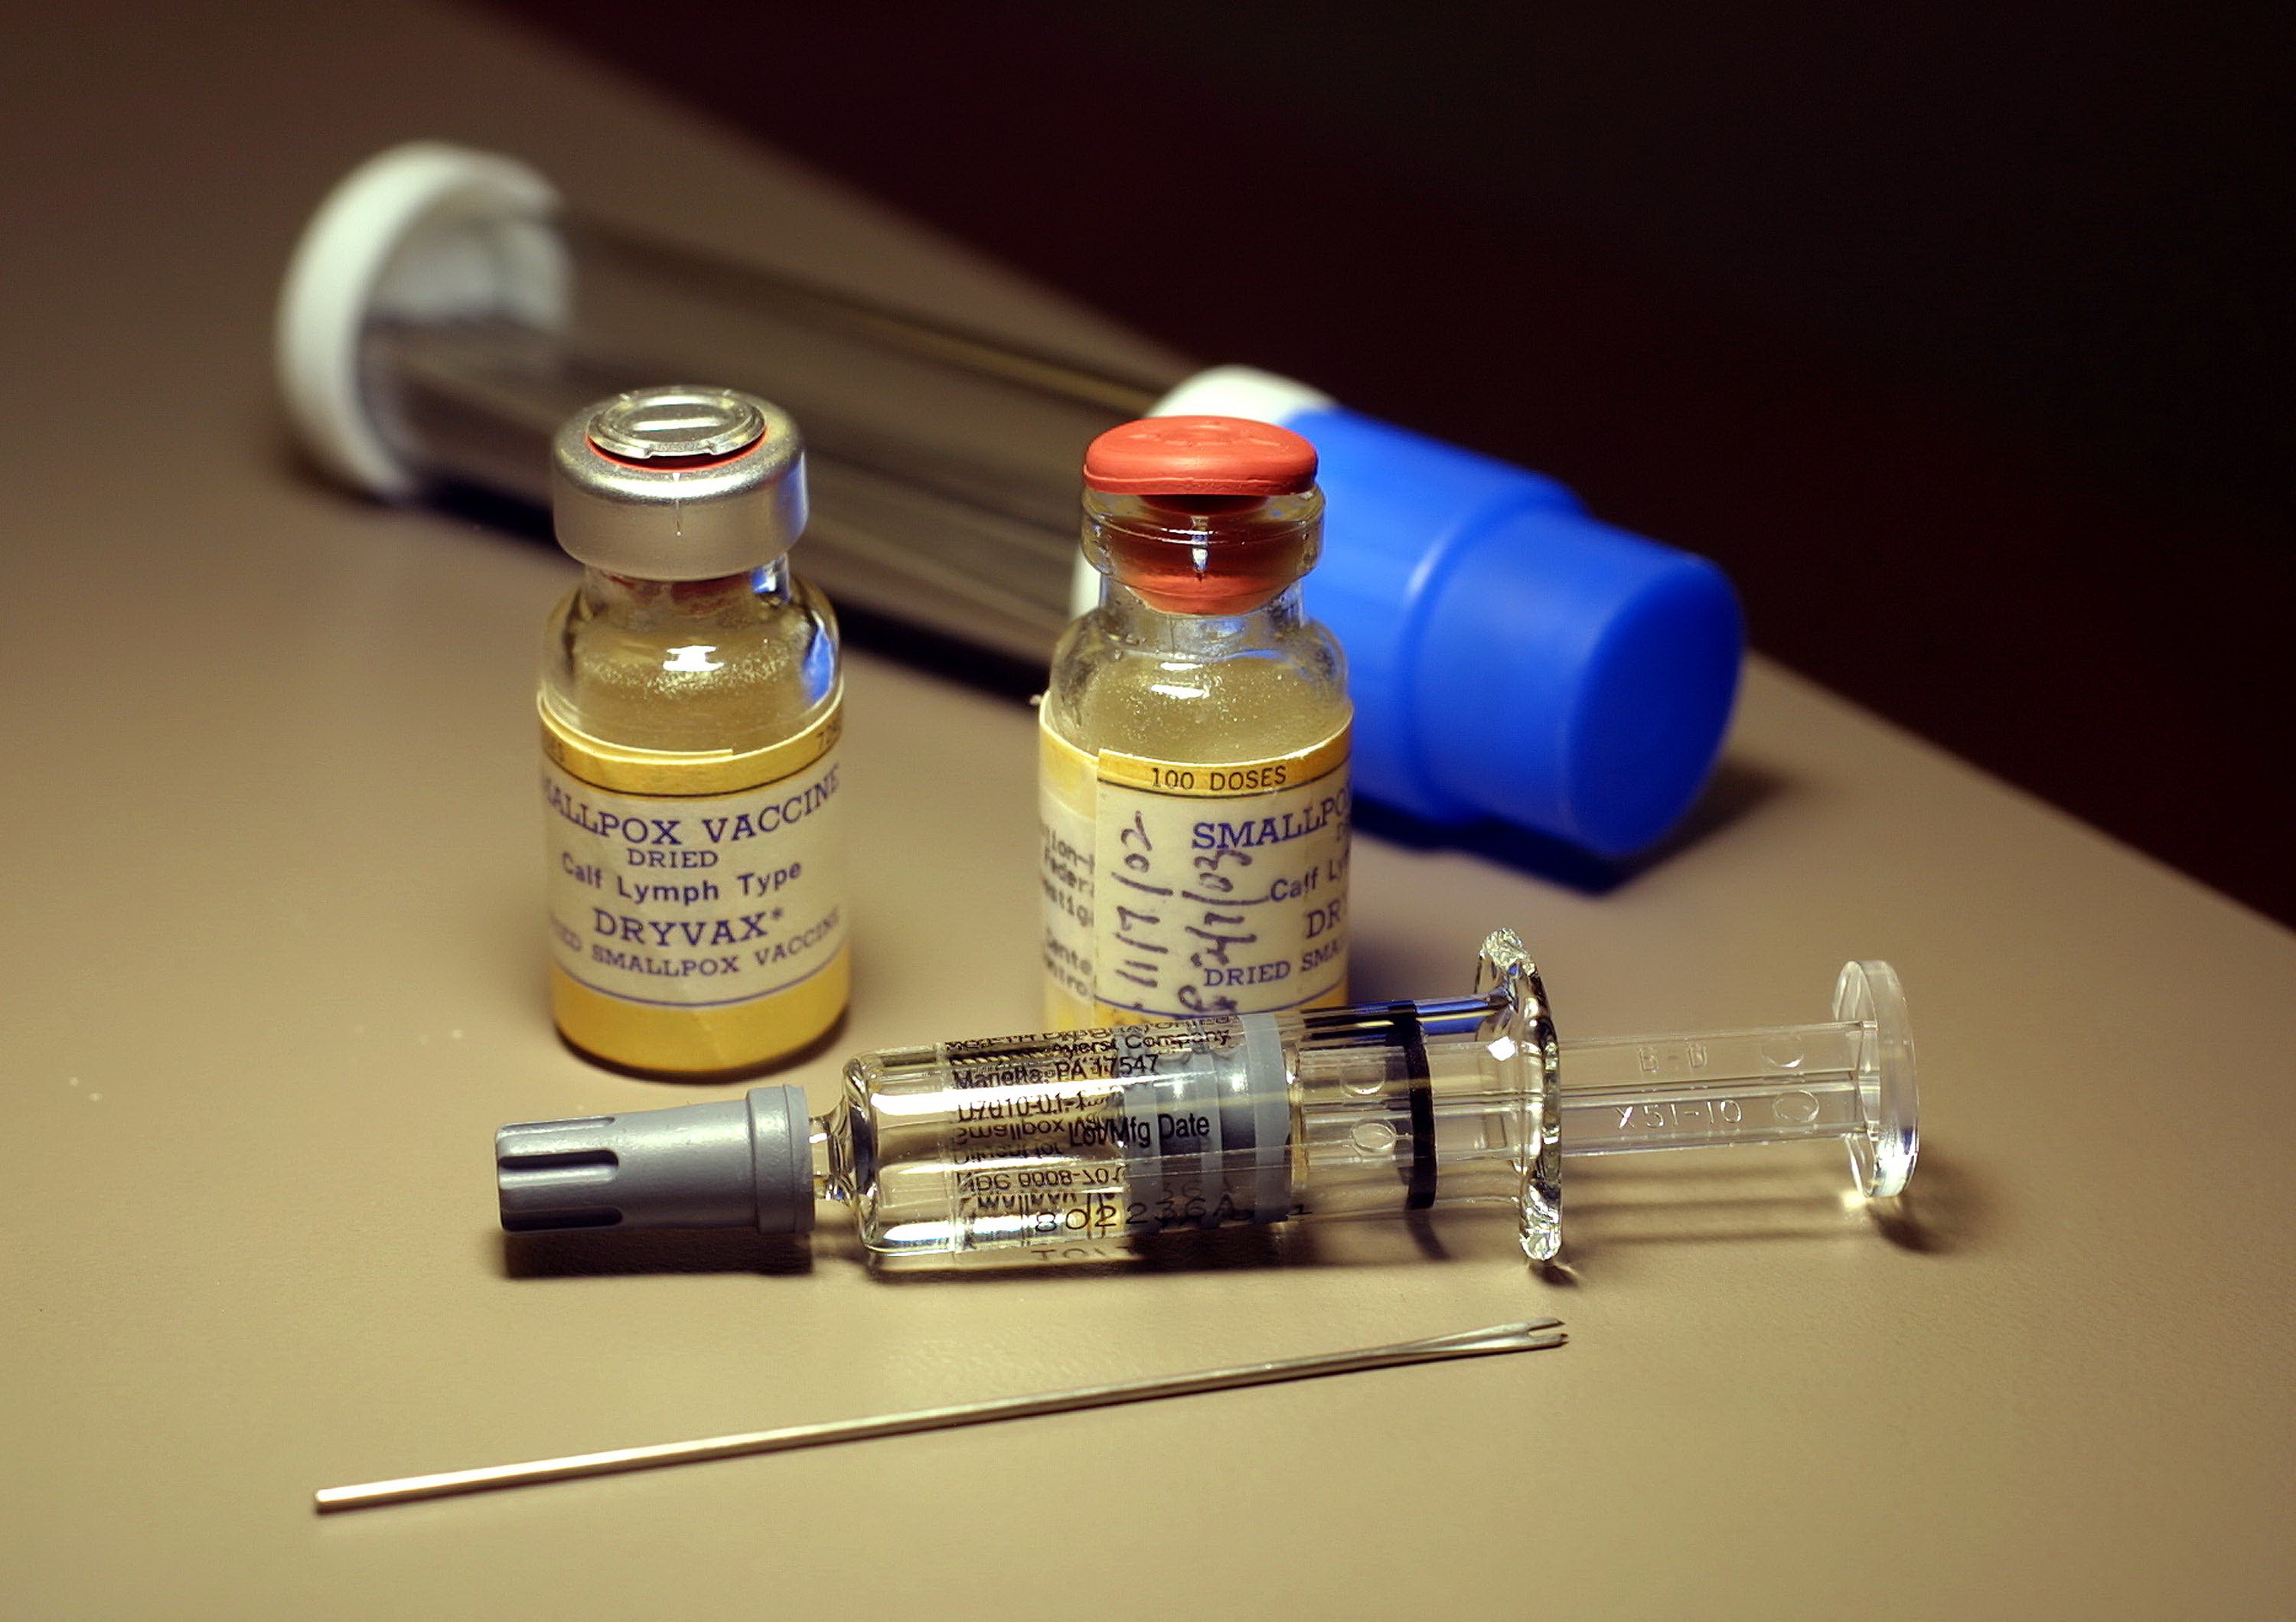 Обработка вакцин